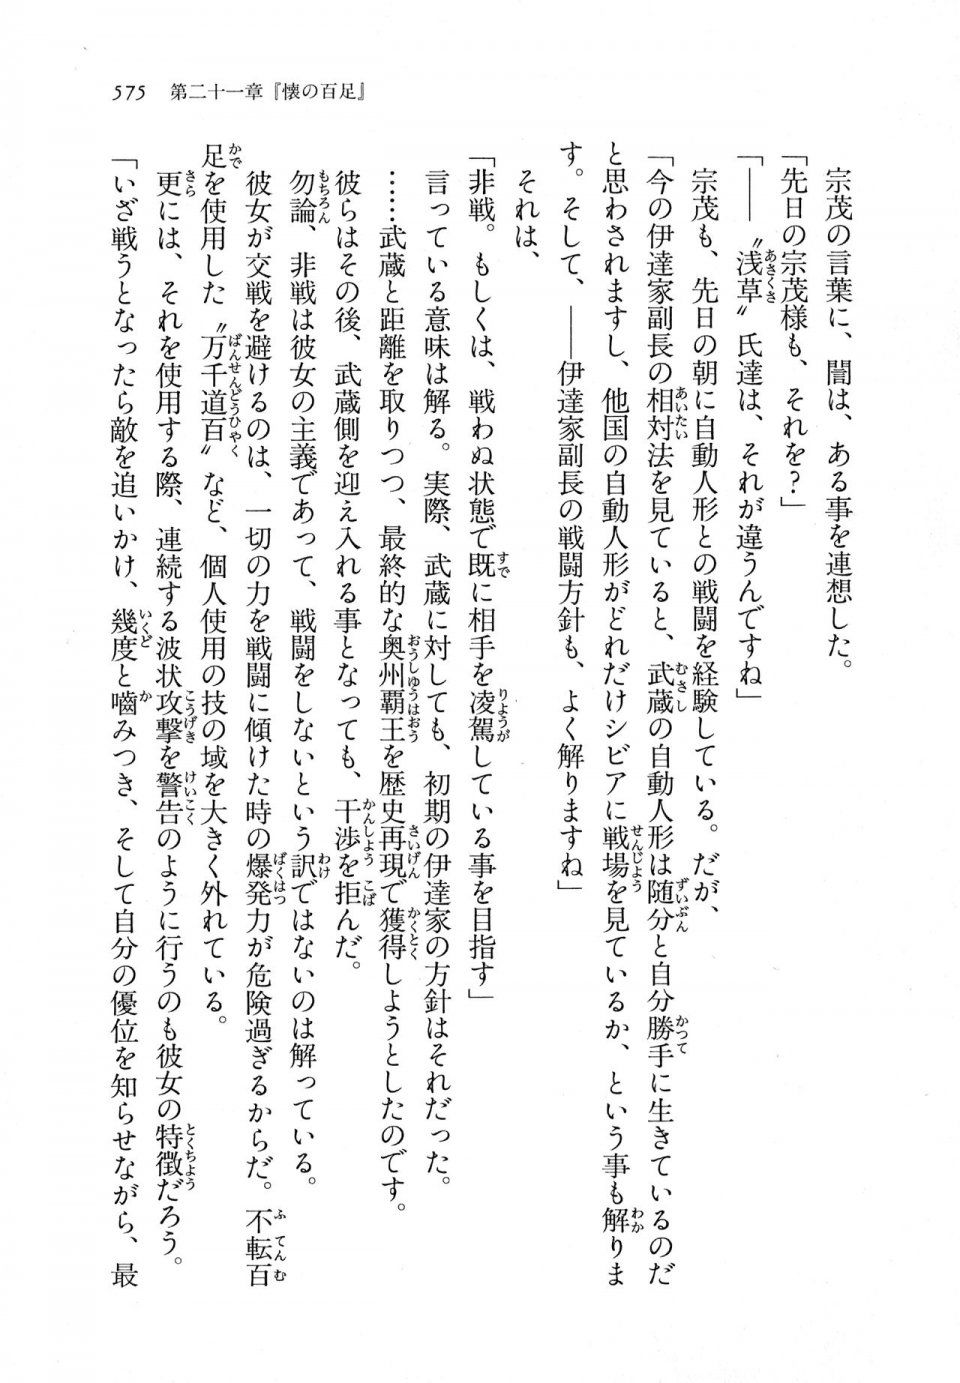 Kyoukai Senjou no Horizon LN Vol 11(5A) - Photo #575